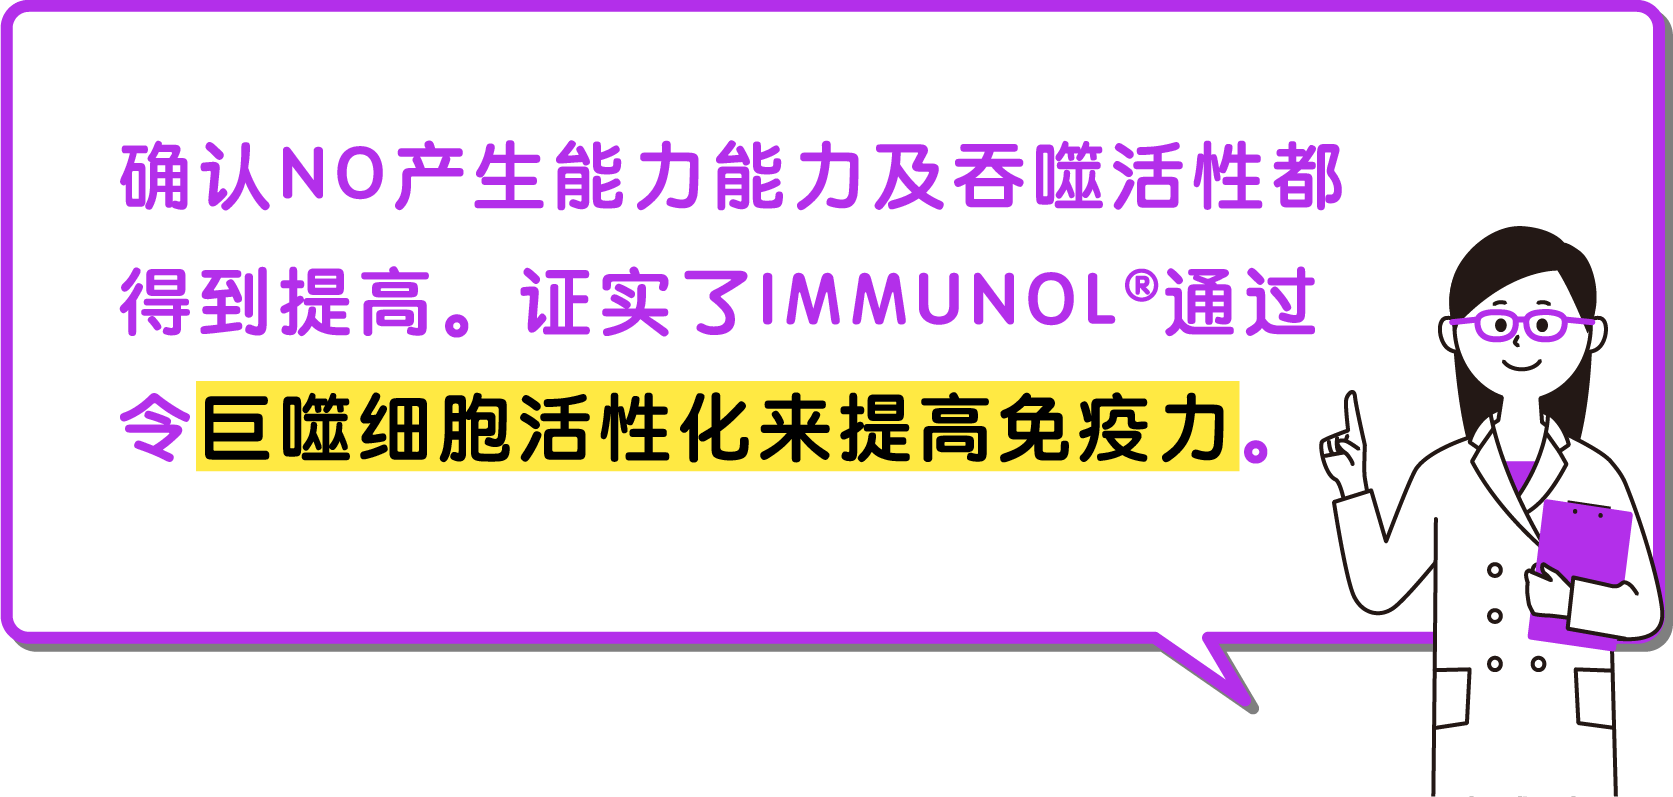 确认NO产生能力能力及吞噬活性都得到提高。证实了IMMUNOL通过令巨噬细胞活性化来提高免疫力。